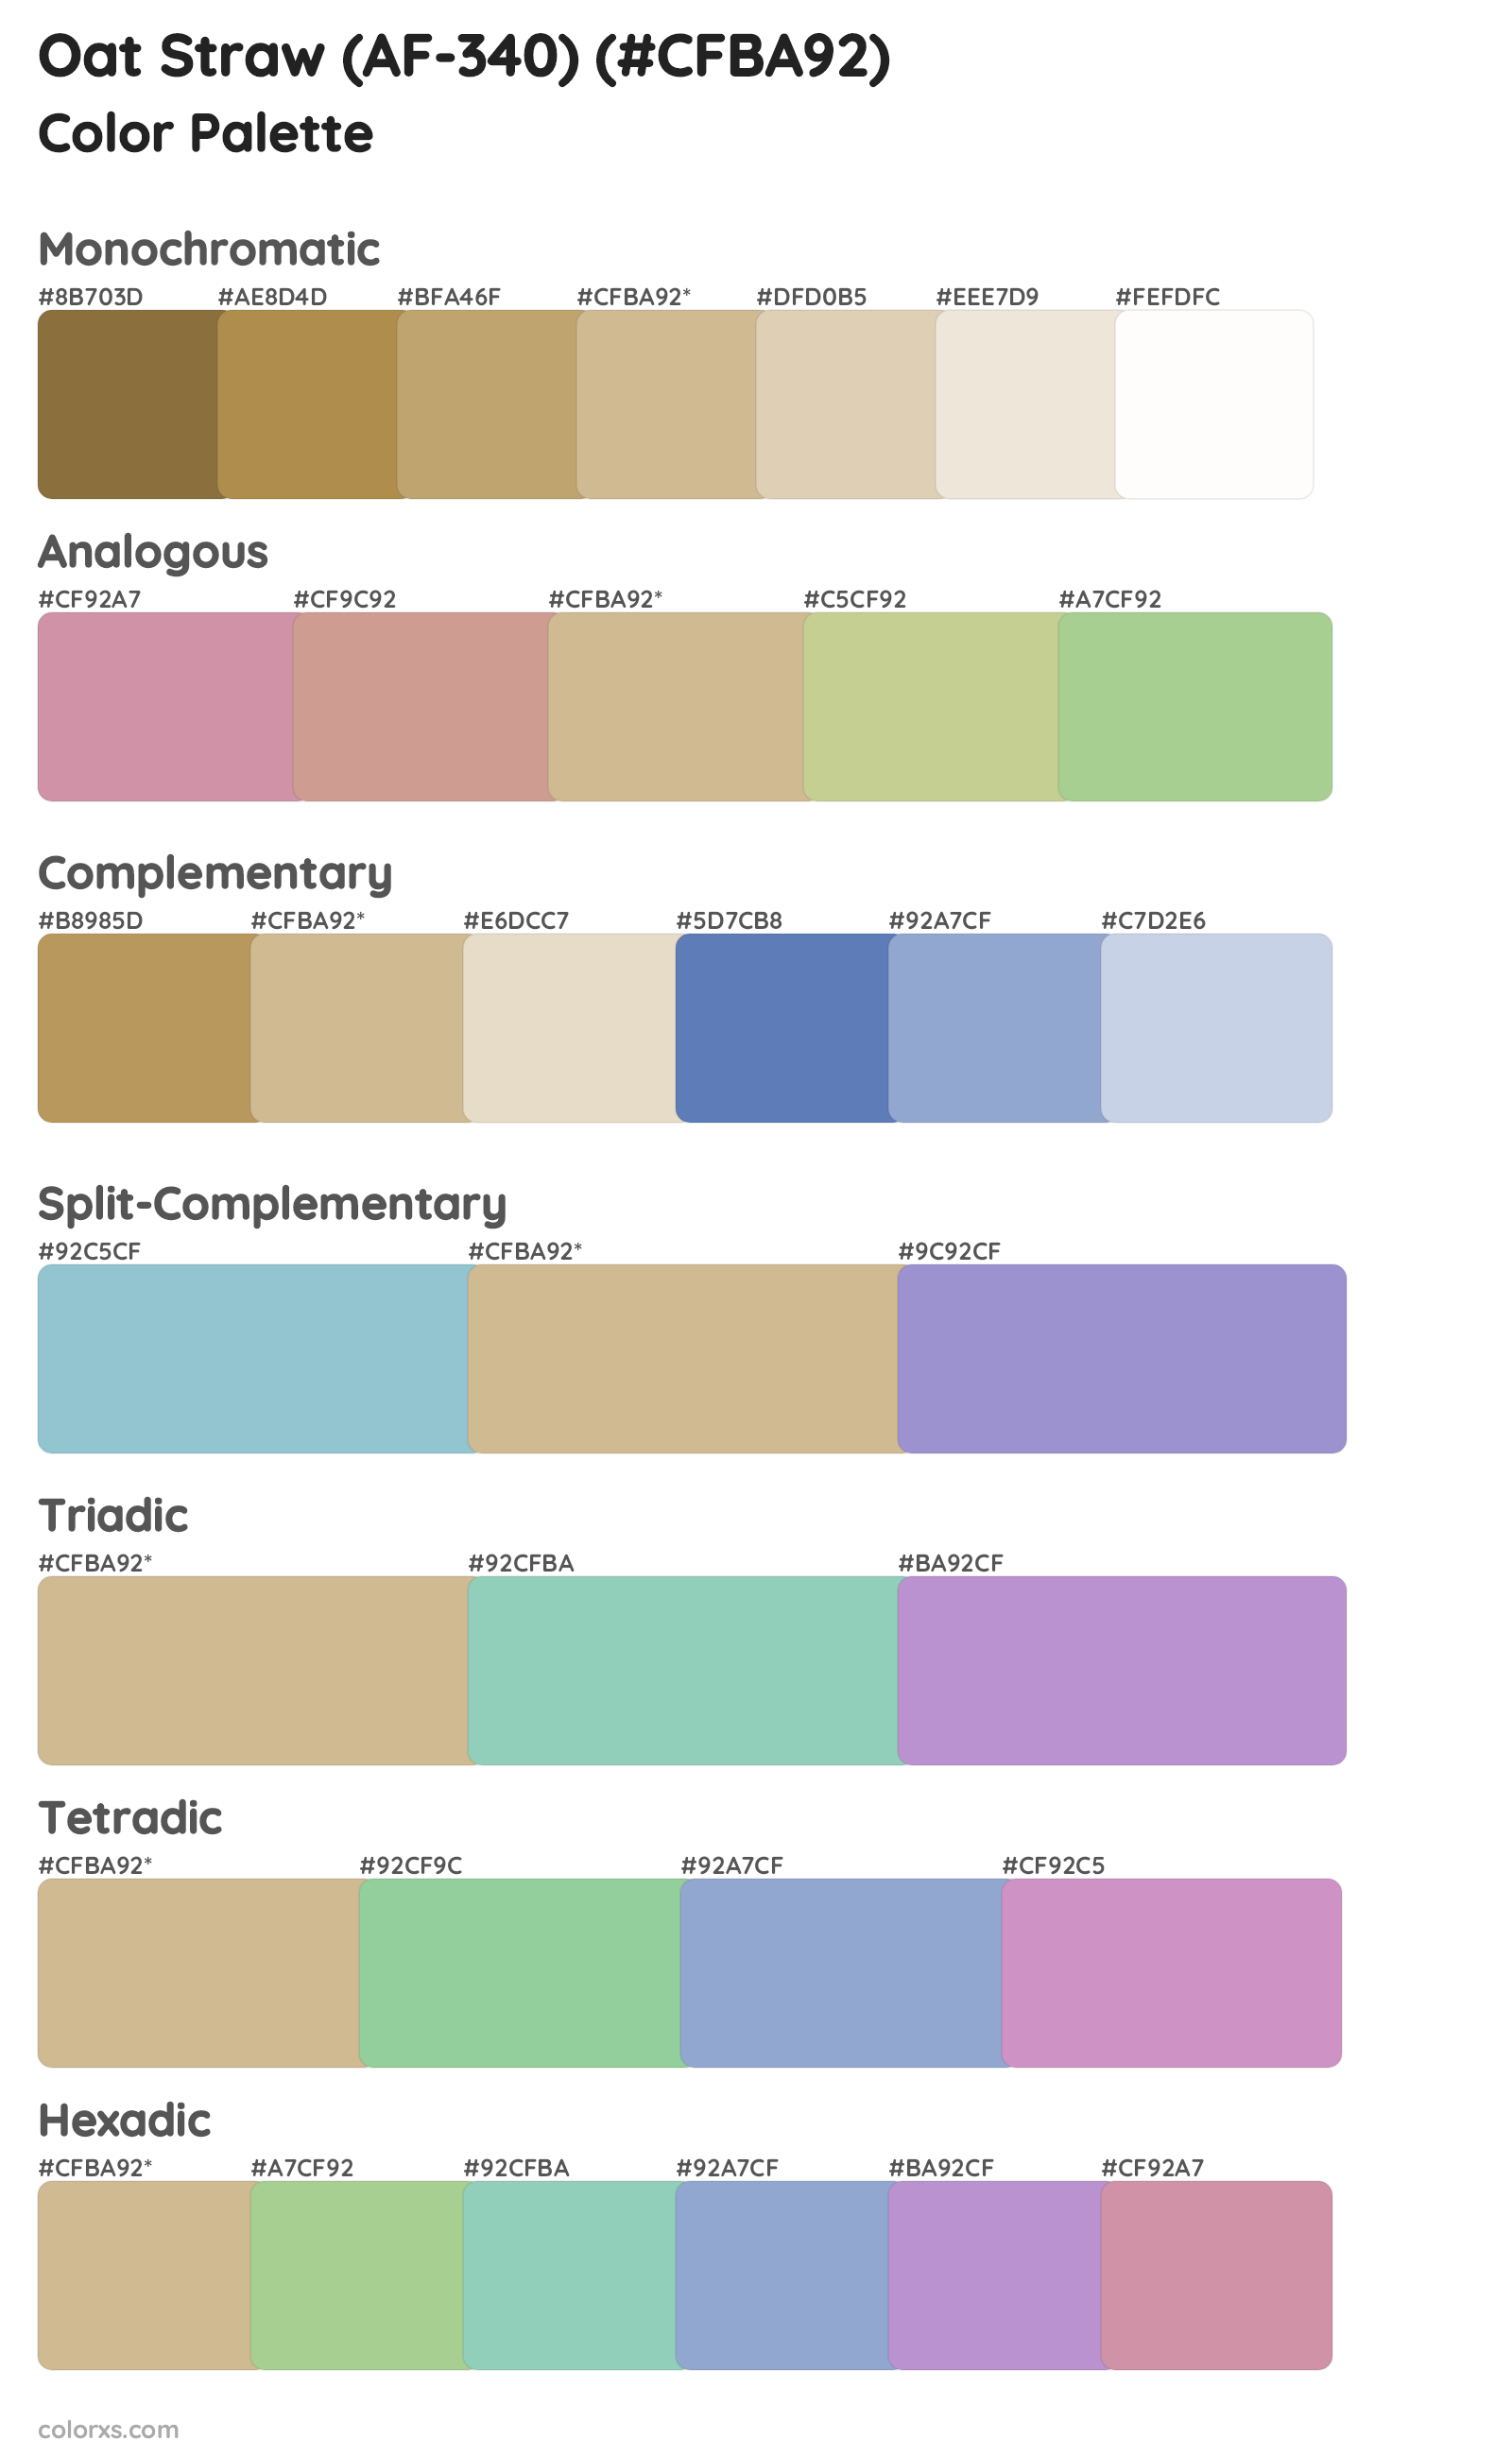 Oat Straw (AF-340) Color Scheme Palettes